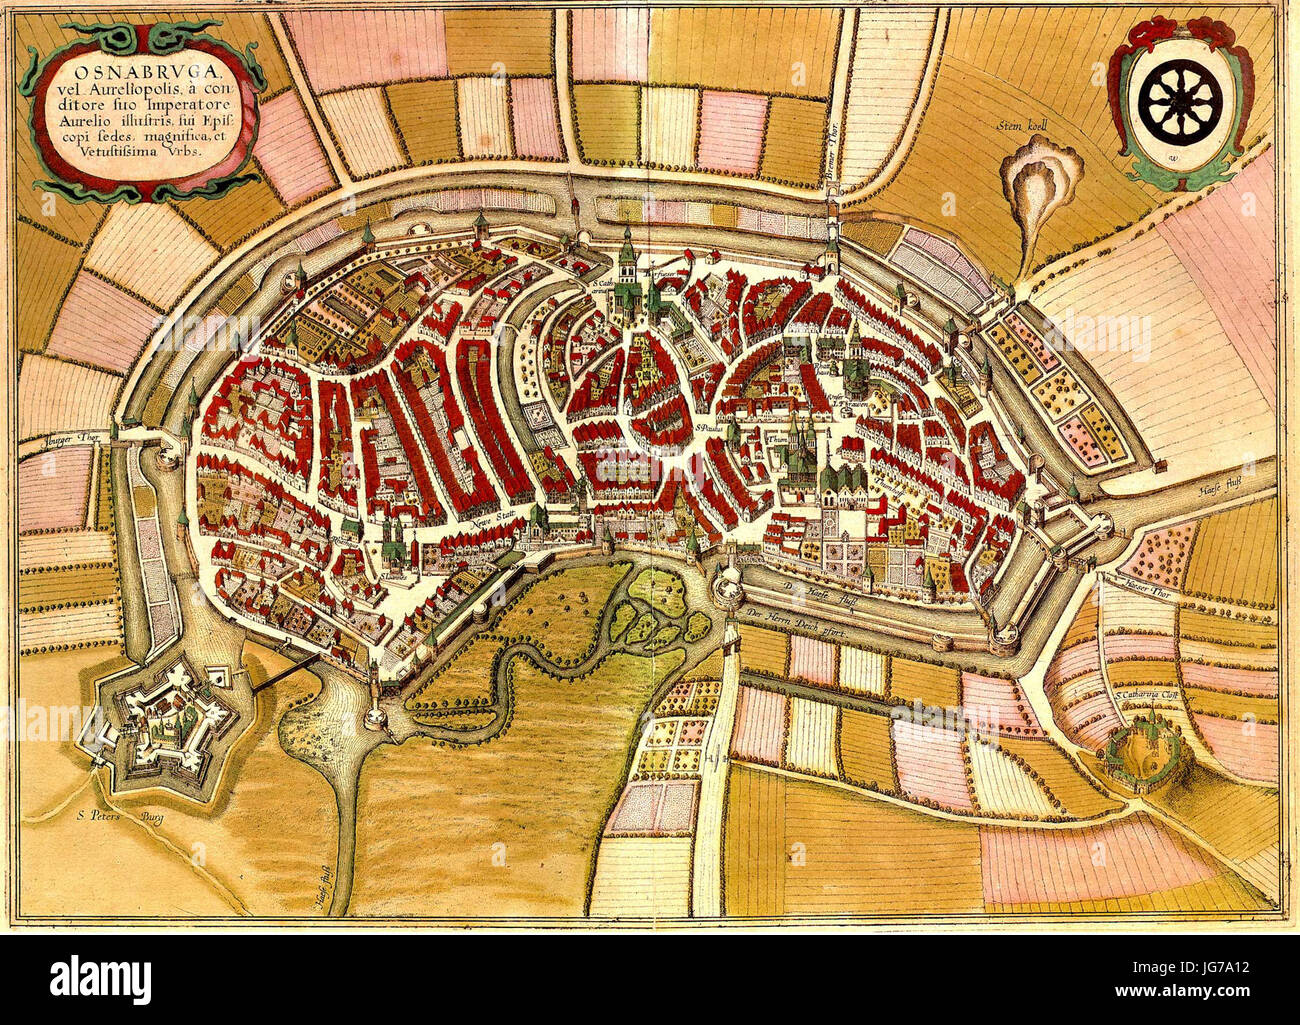 Stadtplan von Osnabrück - Wenzel Hollar - 1633 Stock Photo